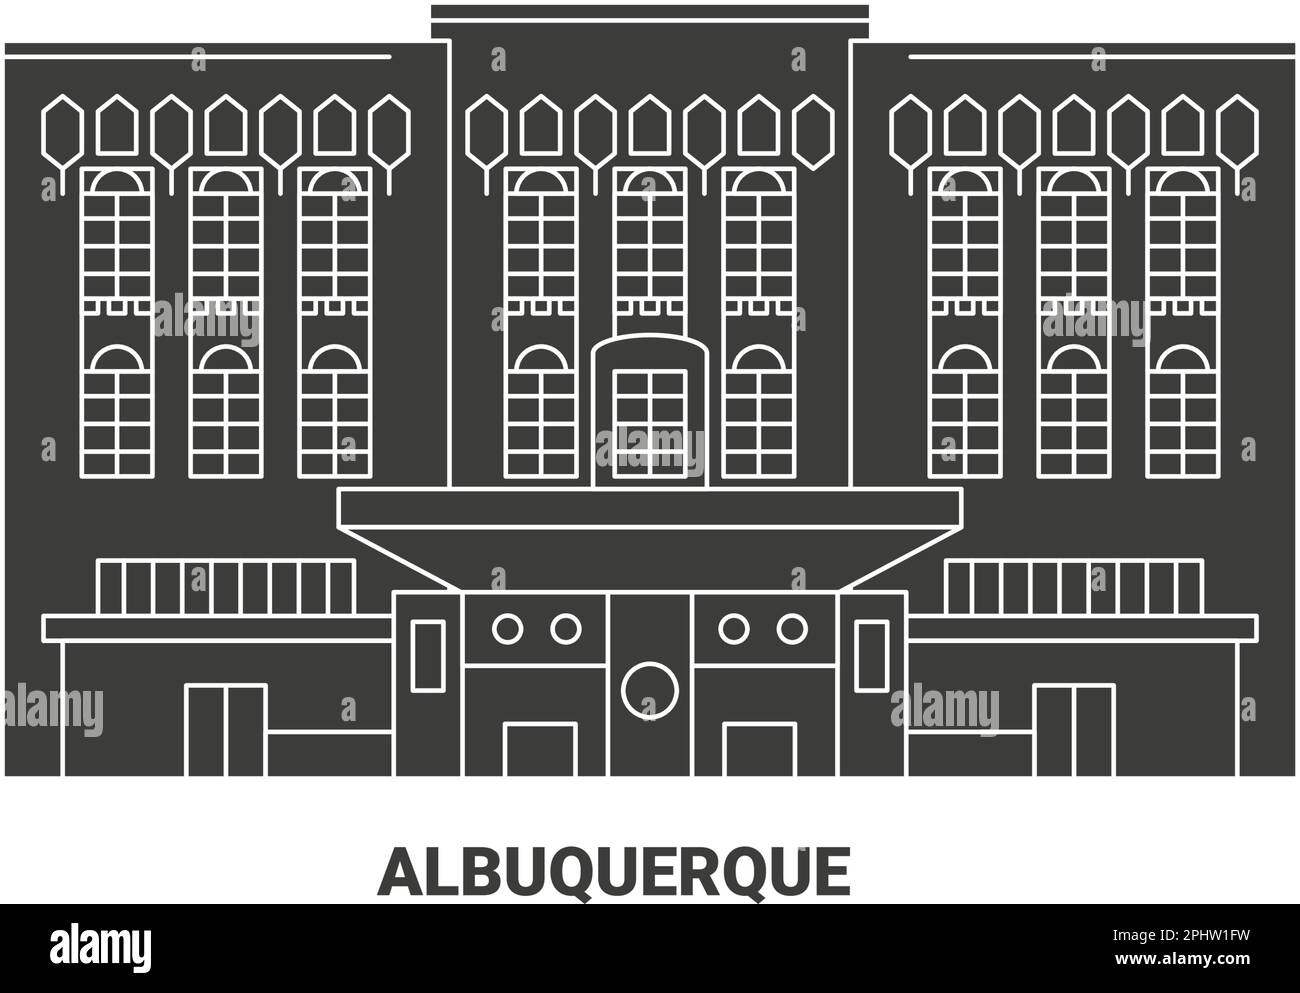 Usa, Albuquerque travel landmark vector illustration Stock Vector